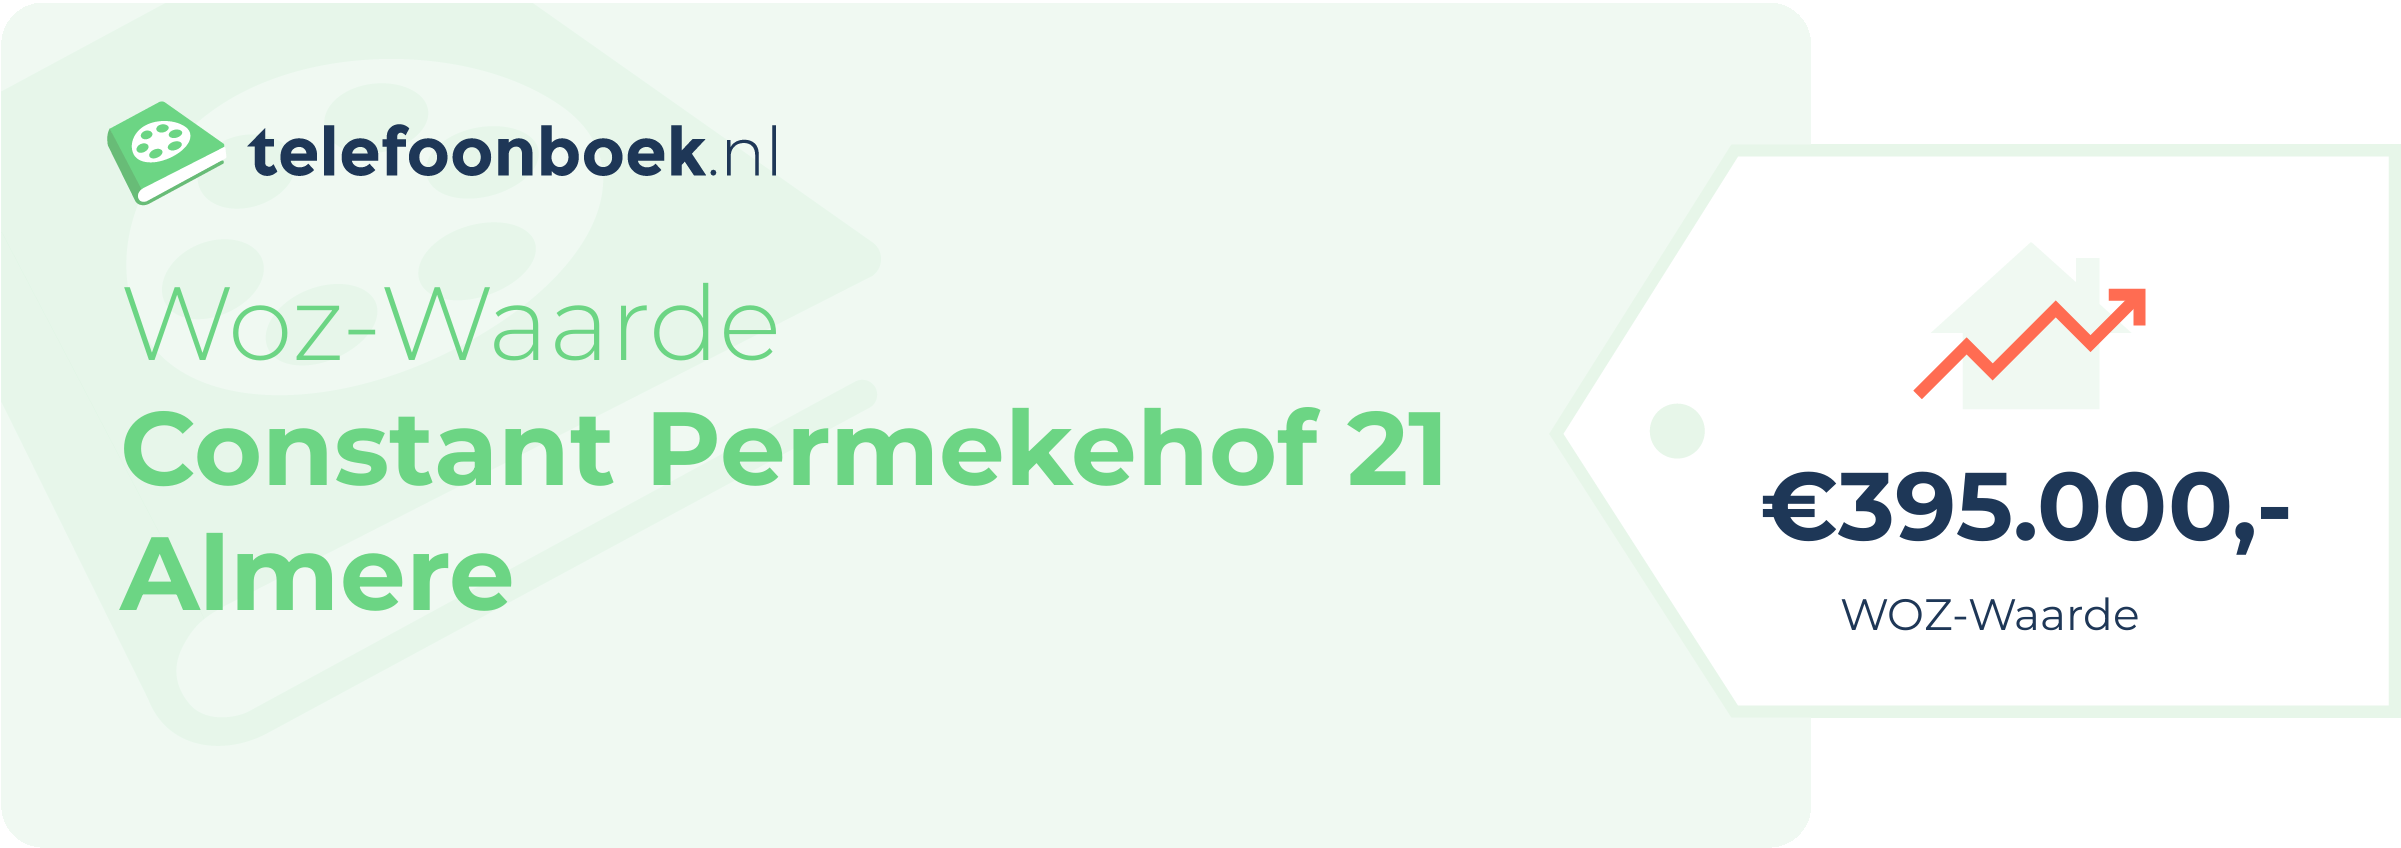 WOZ-waarde Constant Permekehof 21 Almere